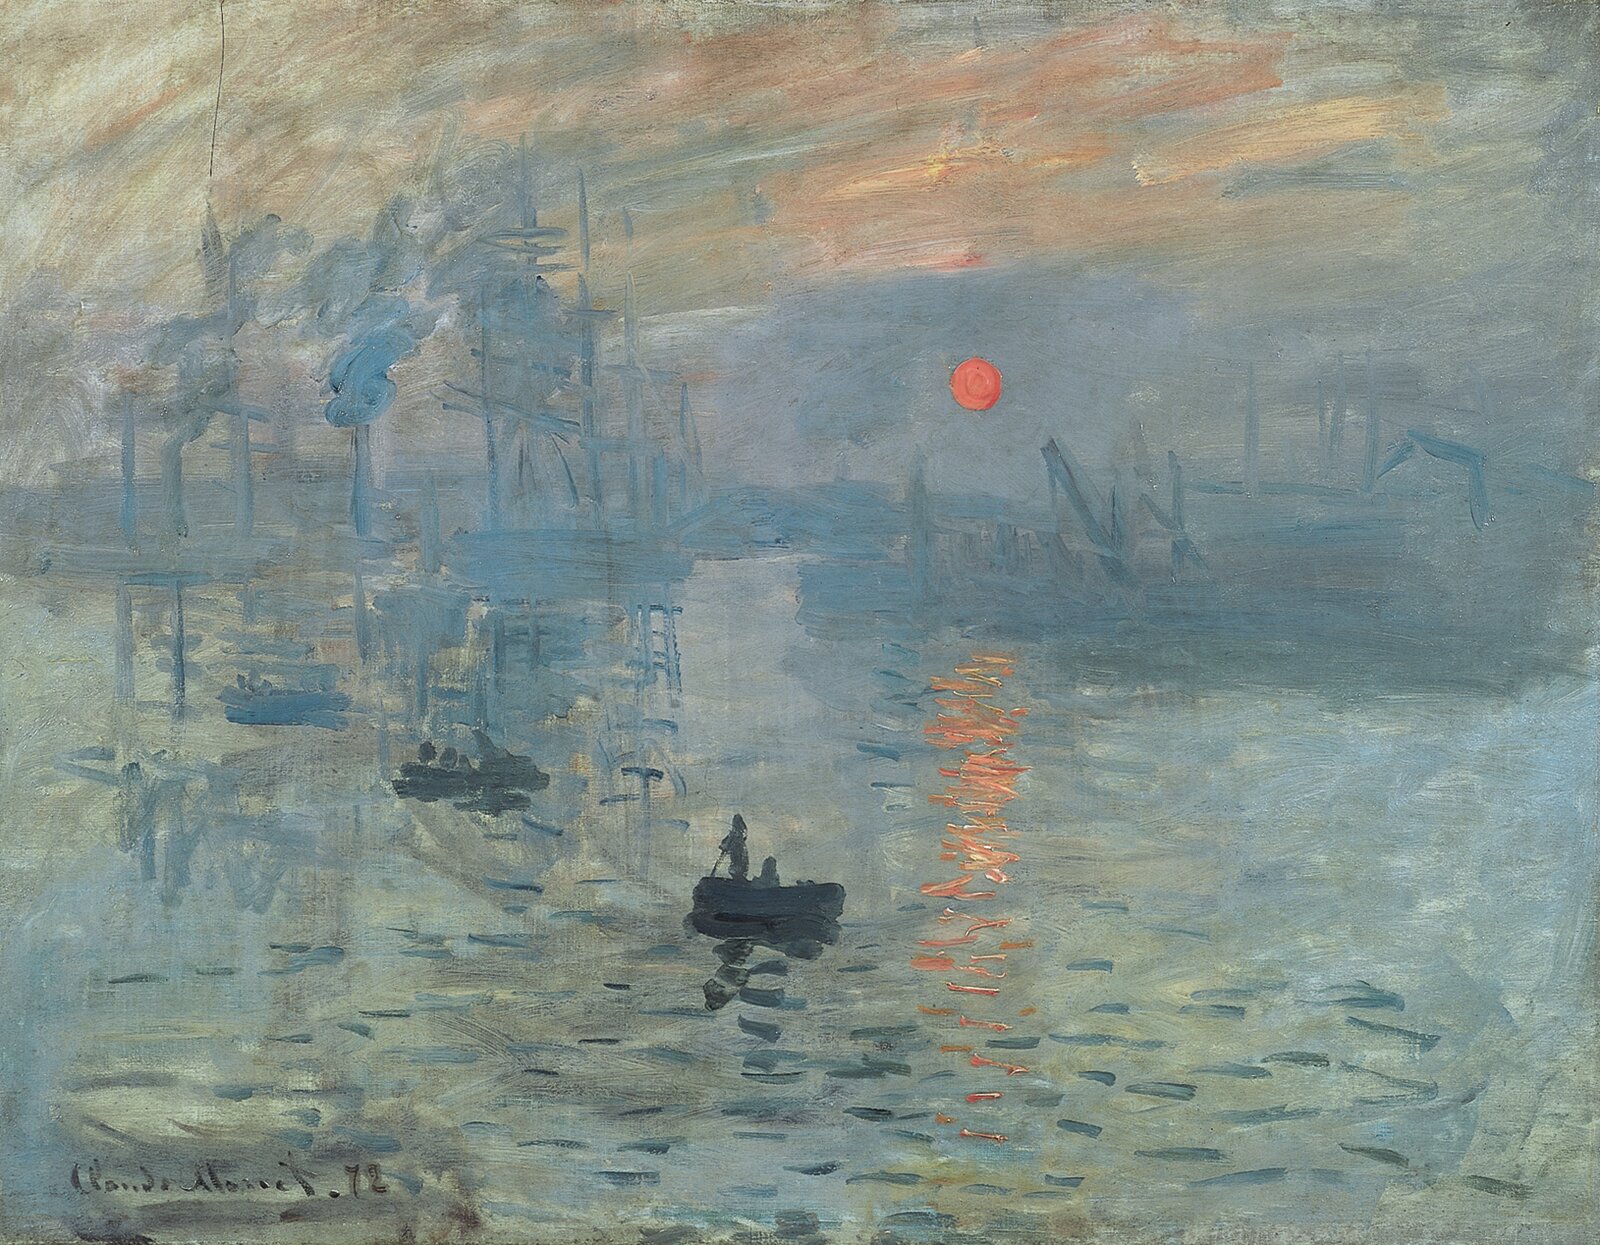 Impresja, wschód słońca Źródło: Claude Monet, Impresja, wschód słońca, 1872, Musée Marmottan Monet, Paryż, licencja: CC 0.